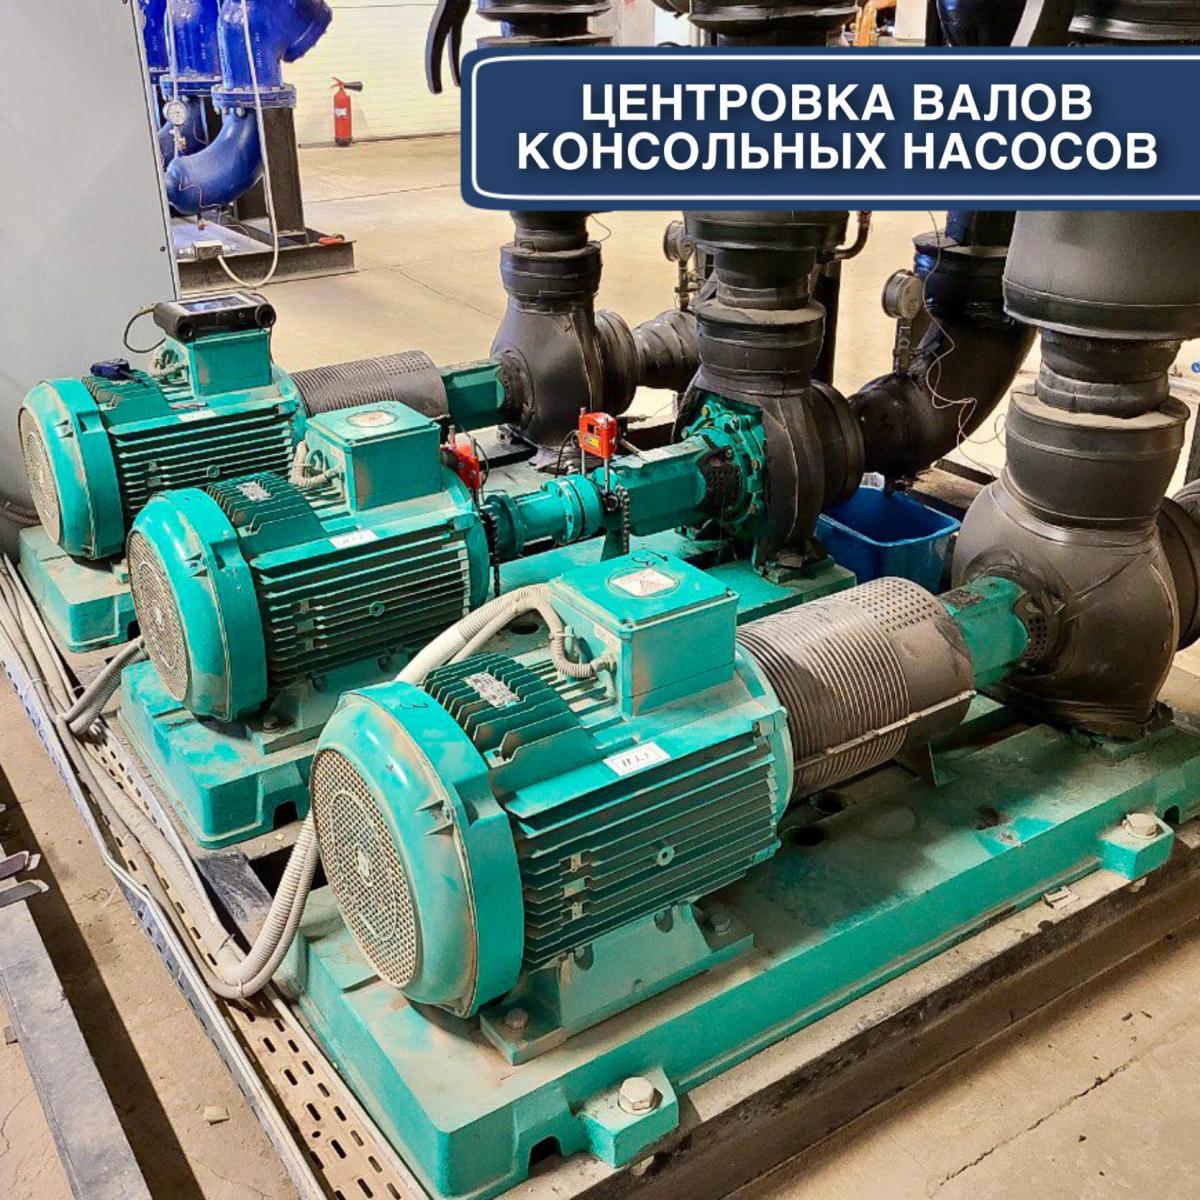 Центровка валов консольных насосов в Одессе: Grundfos, Wilo, DAB, KSB